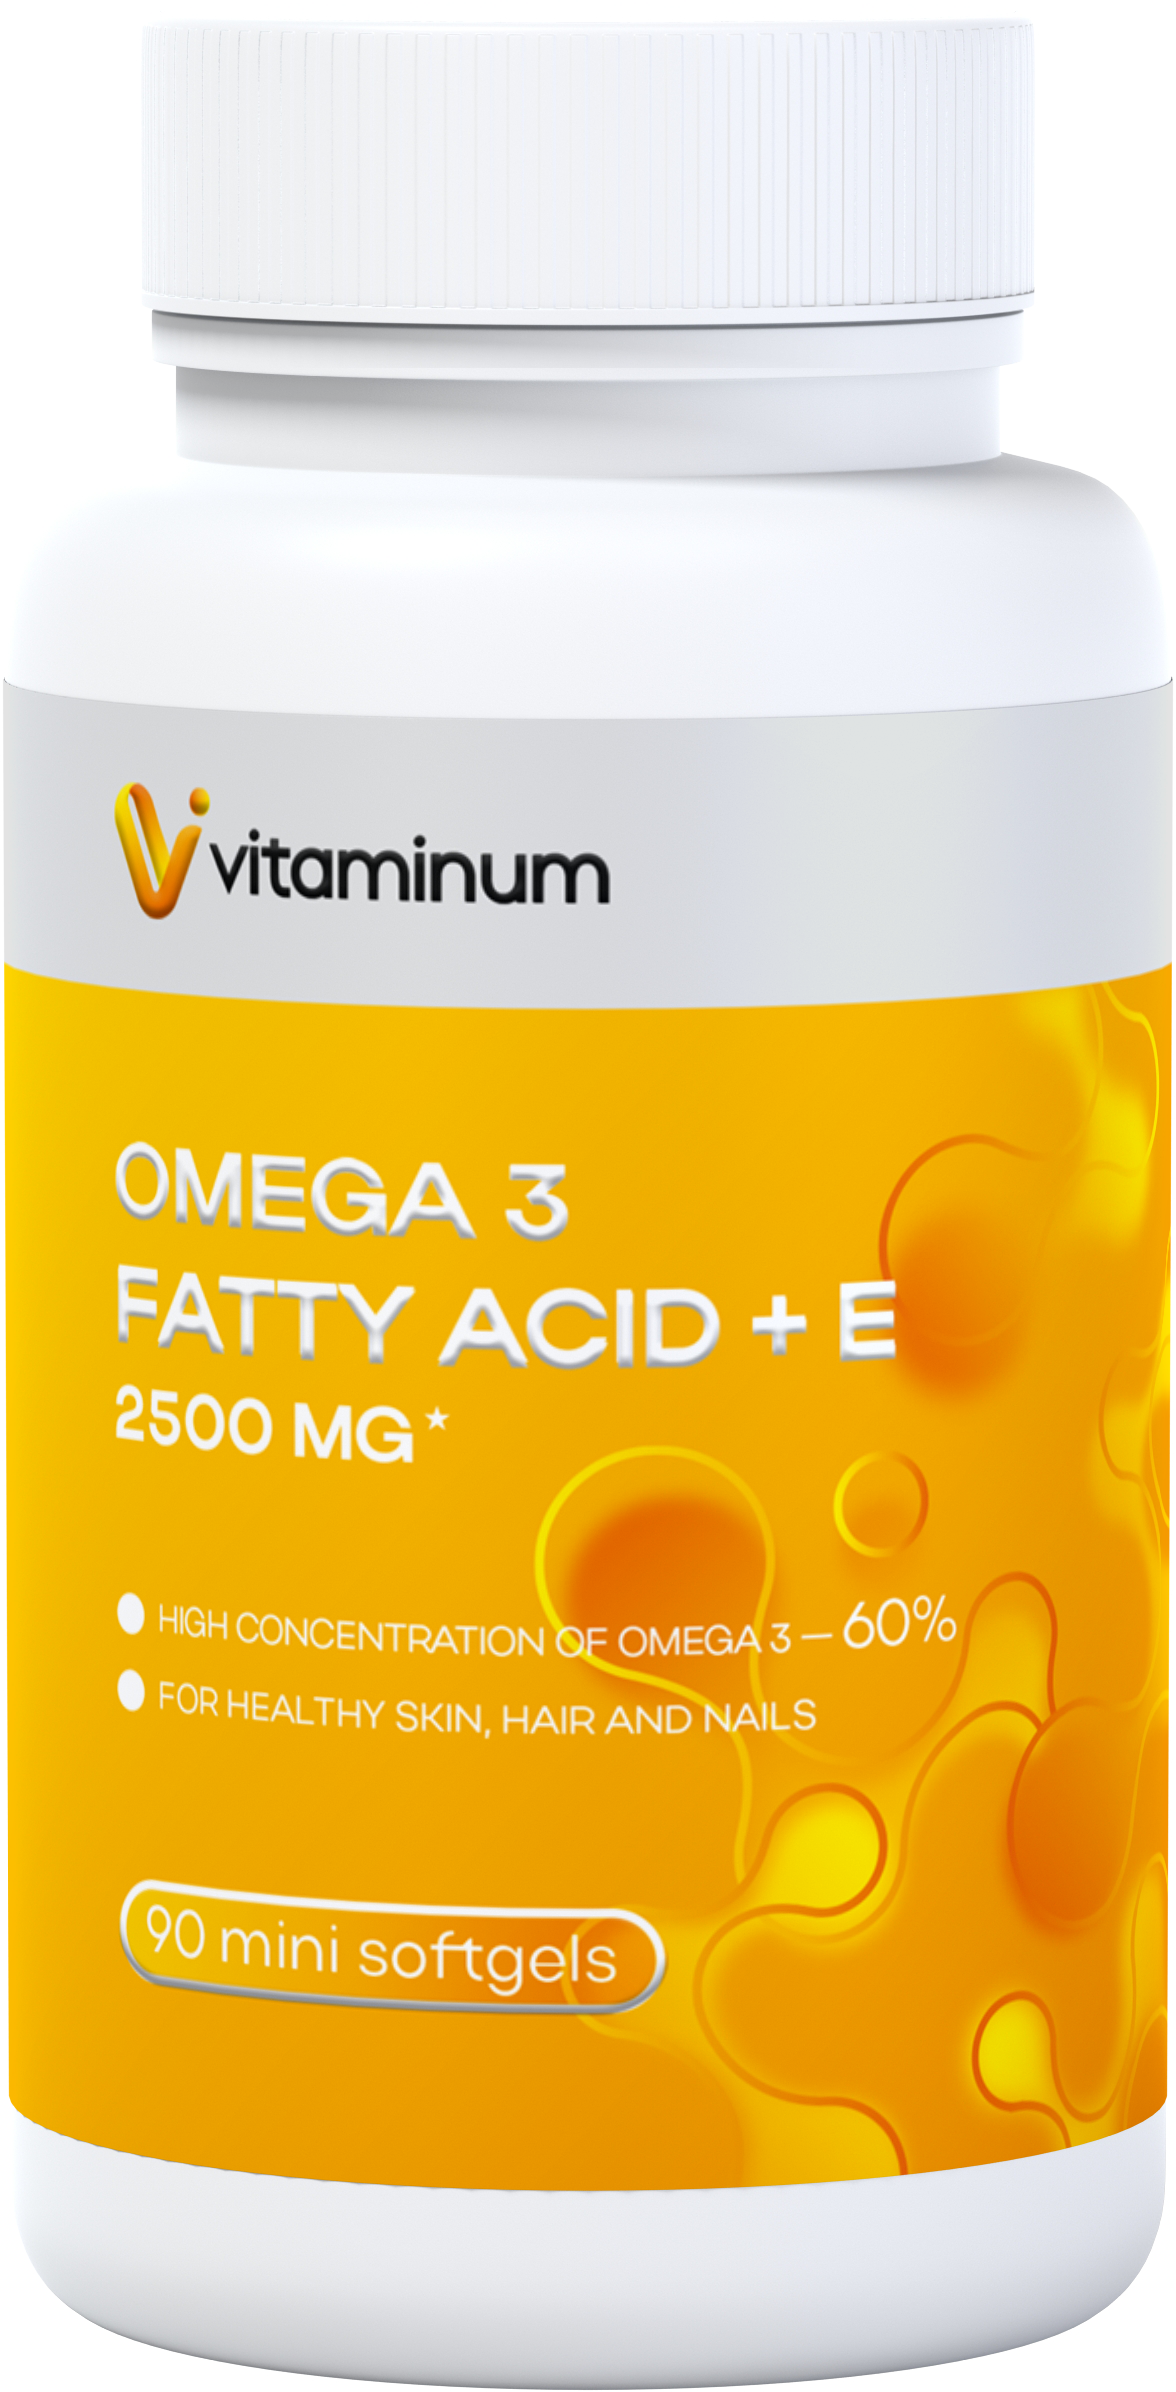  Vitaminum ОМЕГА 3 60% + витамин Е (2500 MG*) 90 капсул 700 мг   в Урае